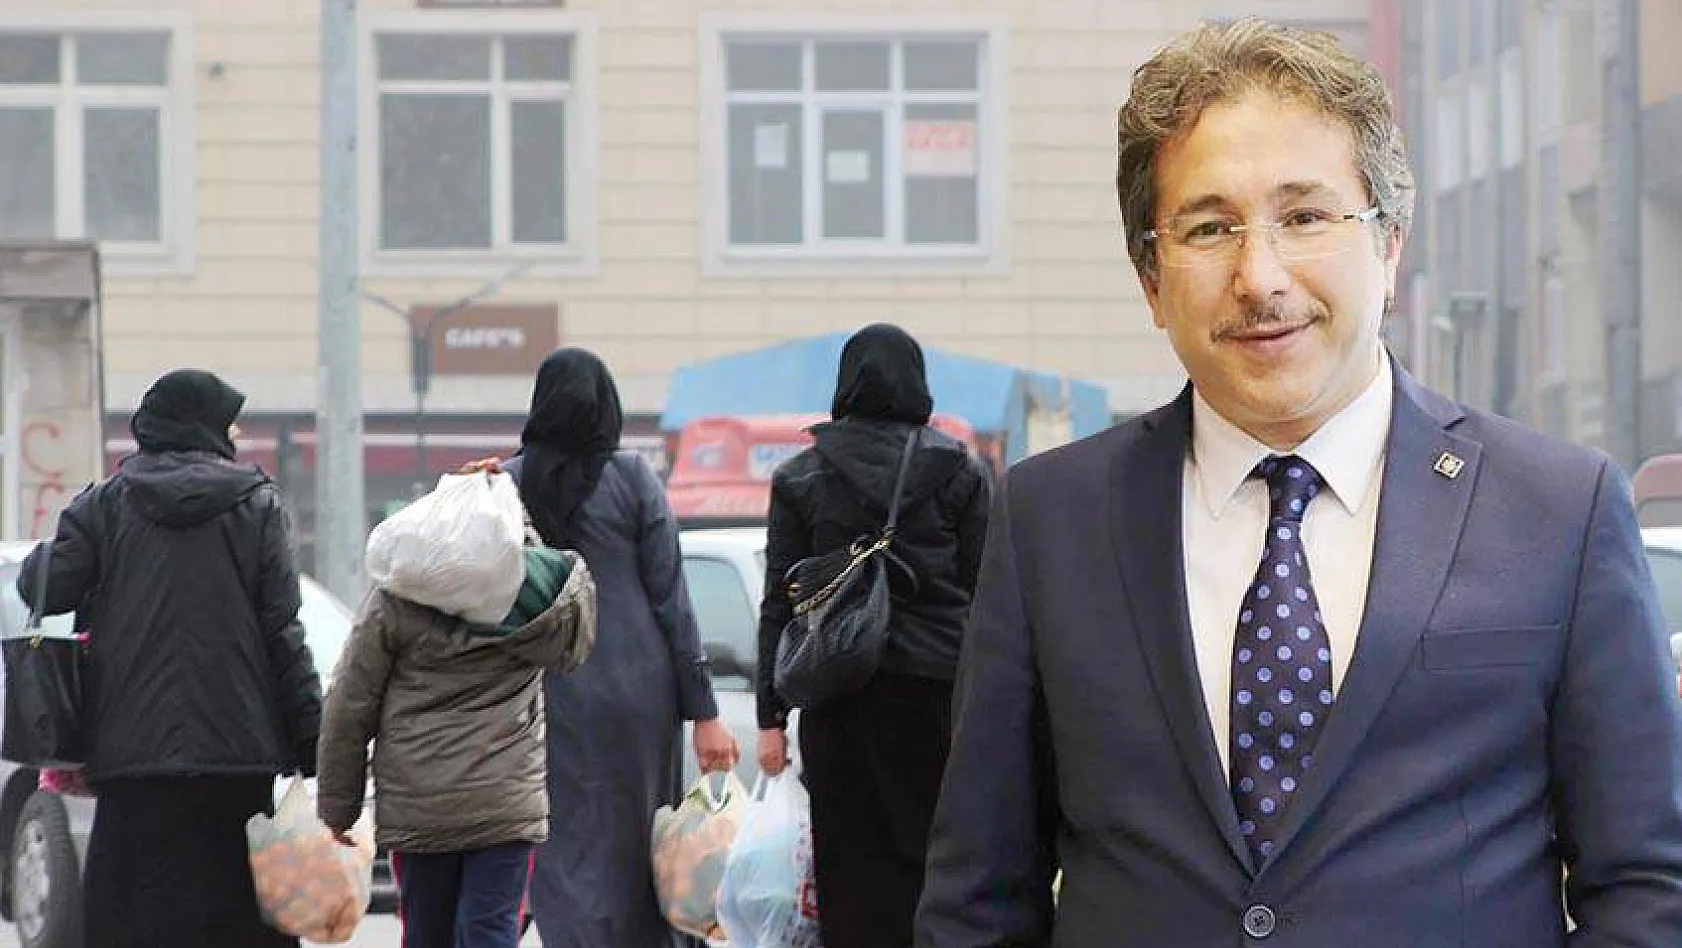 Kayseri Sağlık Müdürü Ali Ramazan Benli, SURİYELİLERE BAĞLAMAK DOĞRU DEĞİL